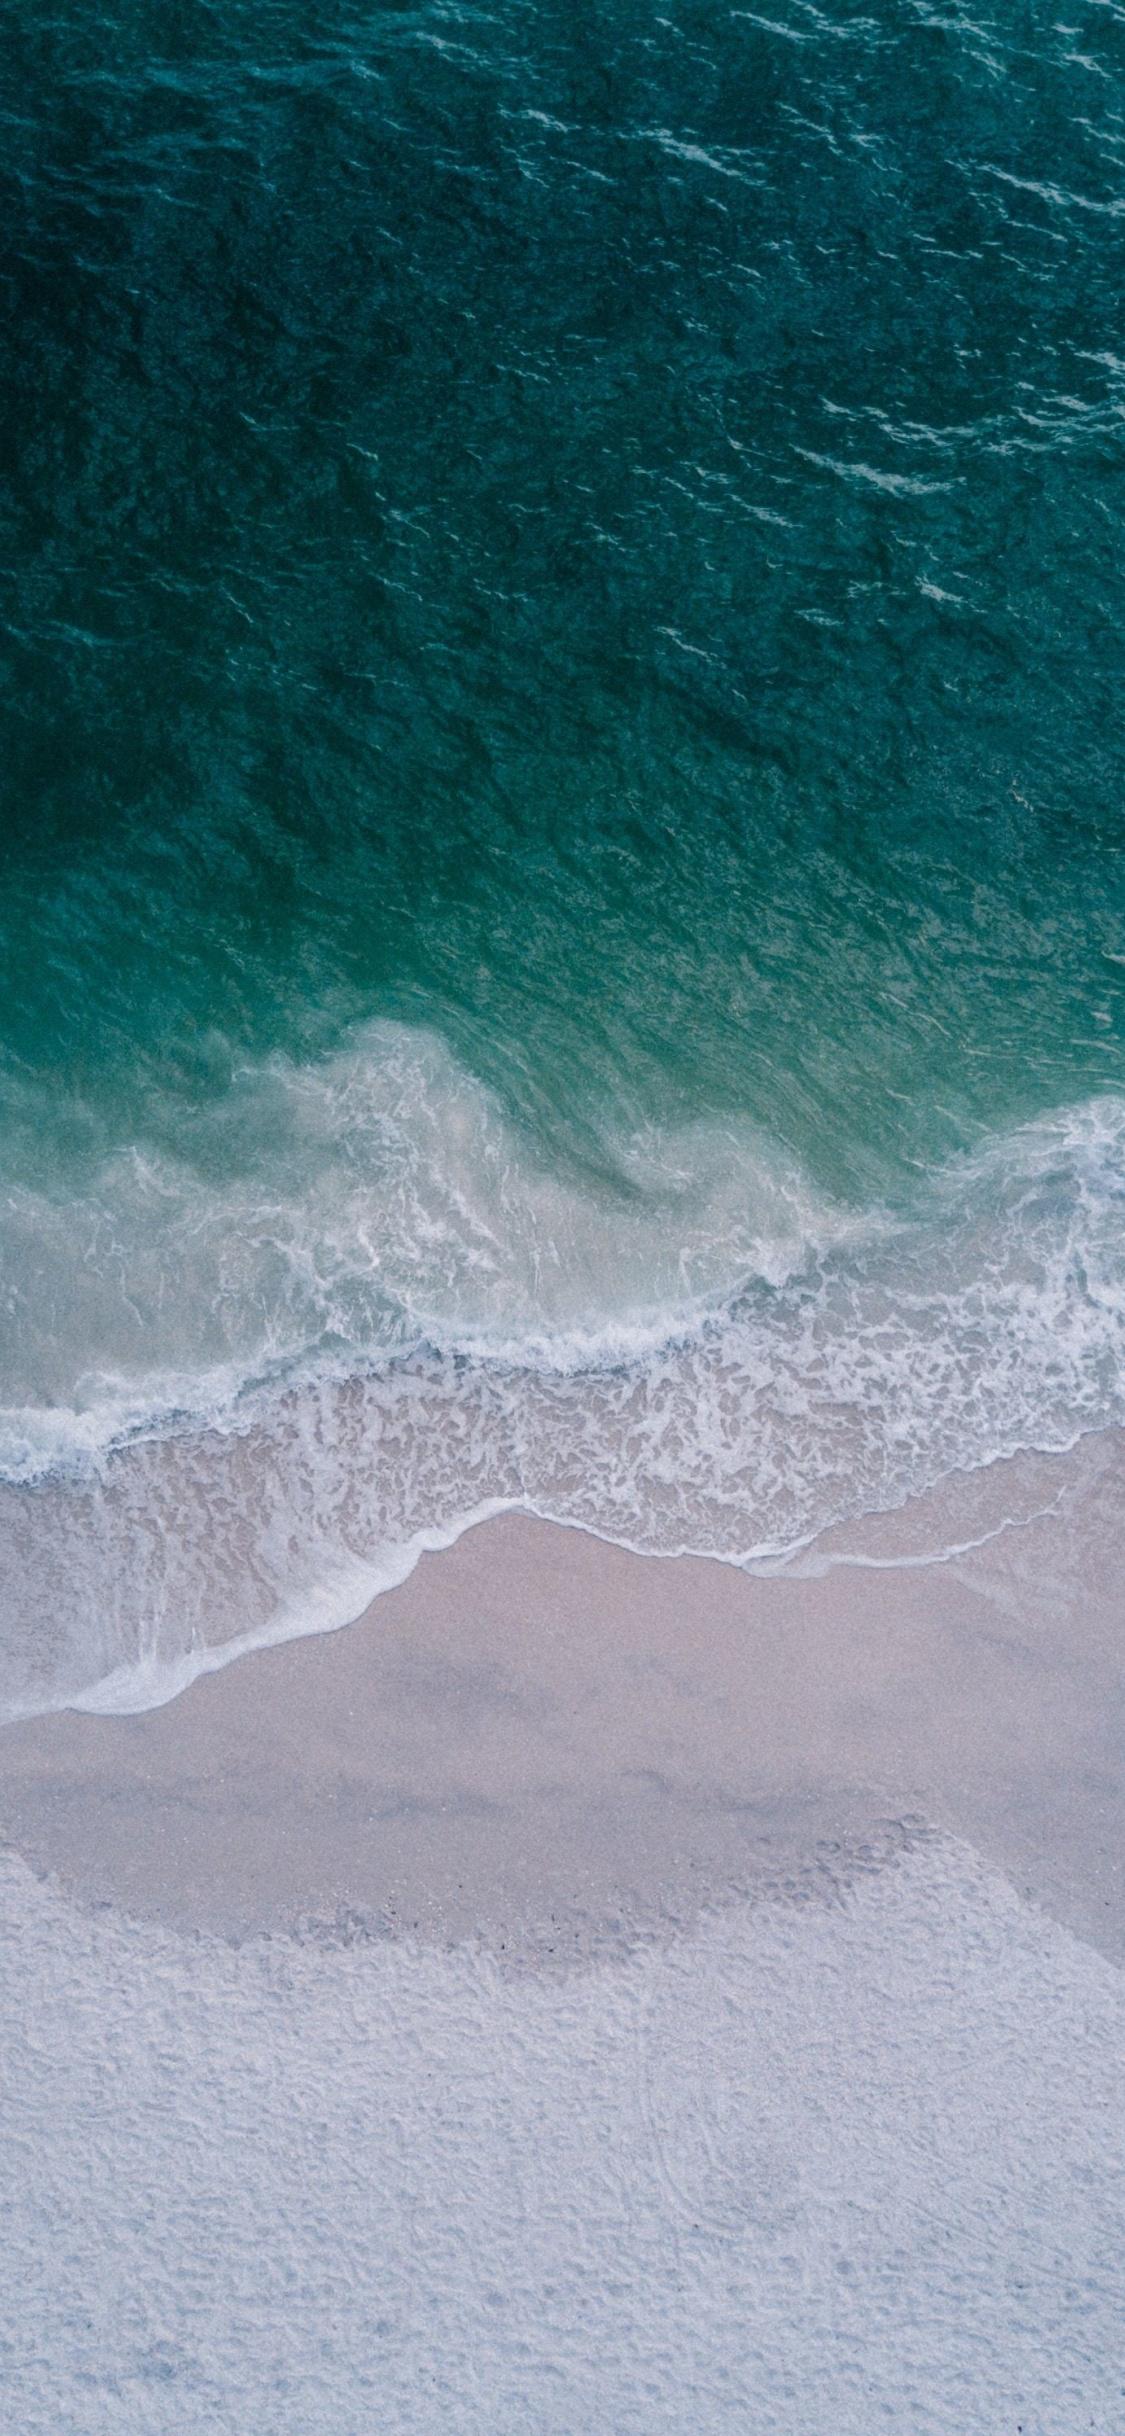 Download 1125x2436 wallpaper beach, calm sea, sea waves